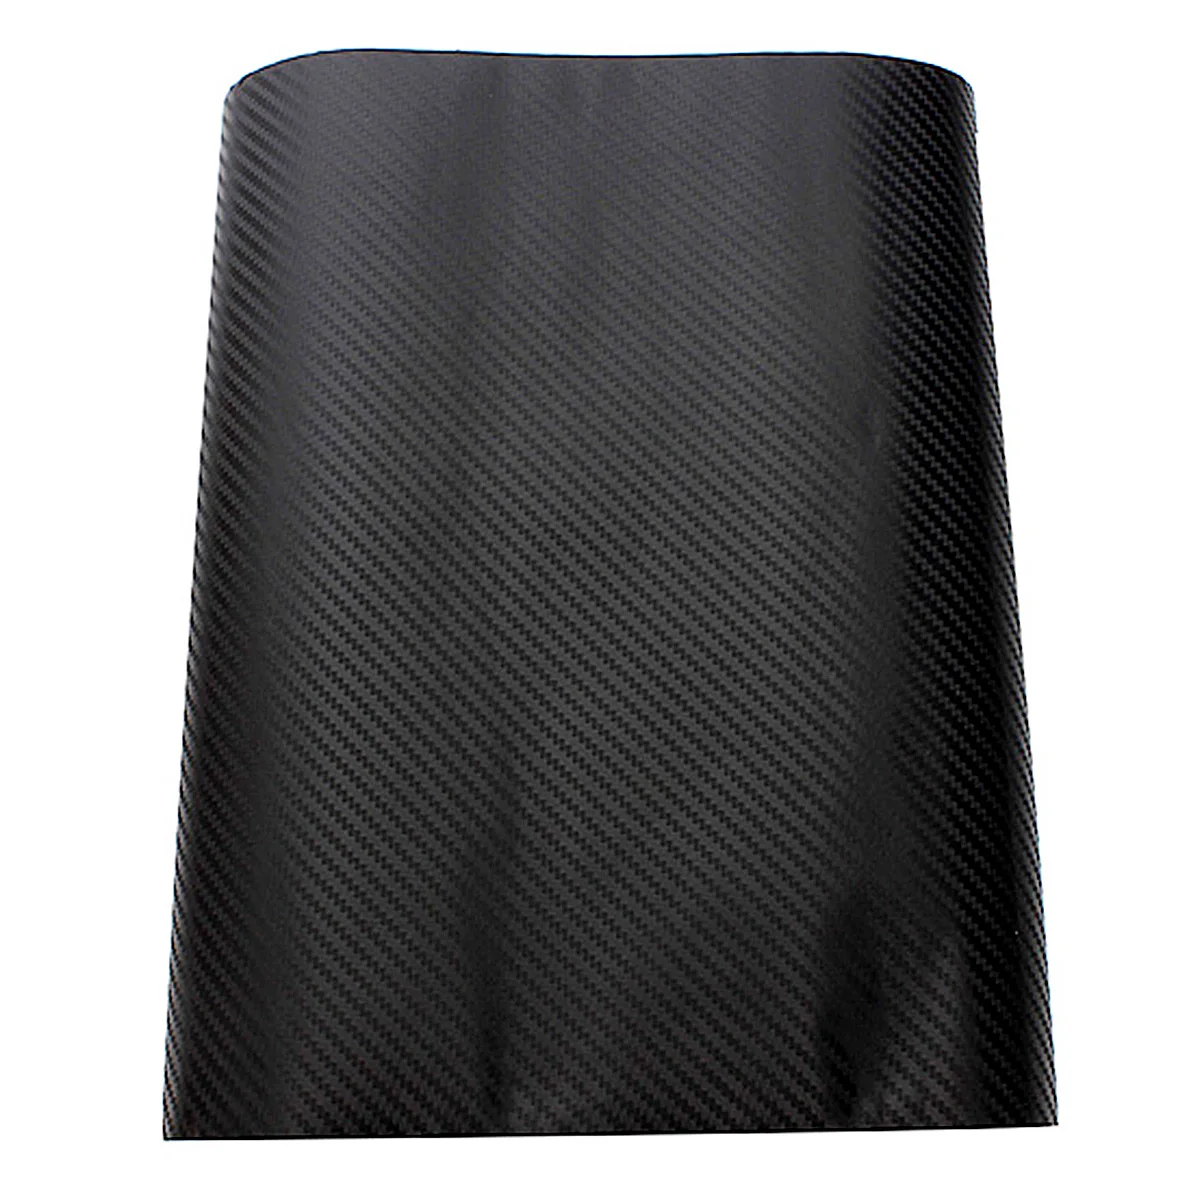 2 шт. черный 3D углеродного волокна пленка саржевого переплетения виниловый лист в рулоне обертывание 130 см x 30 см